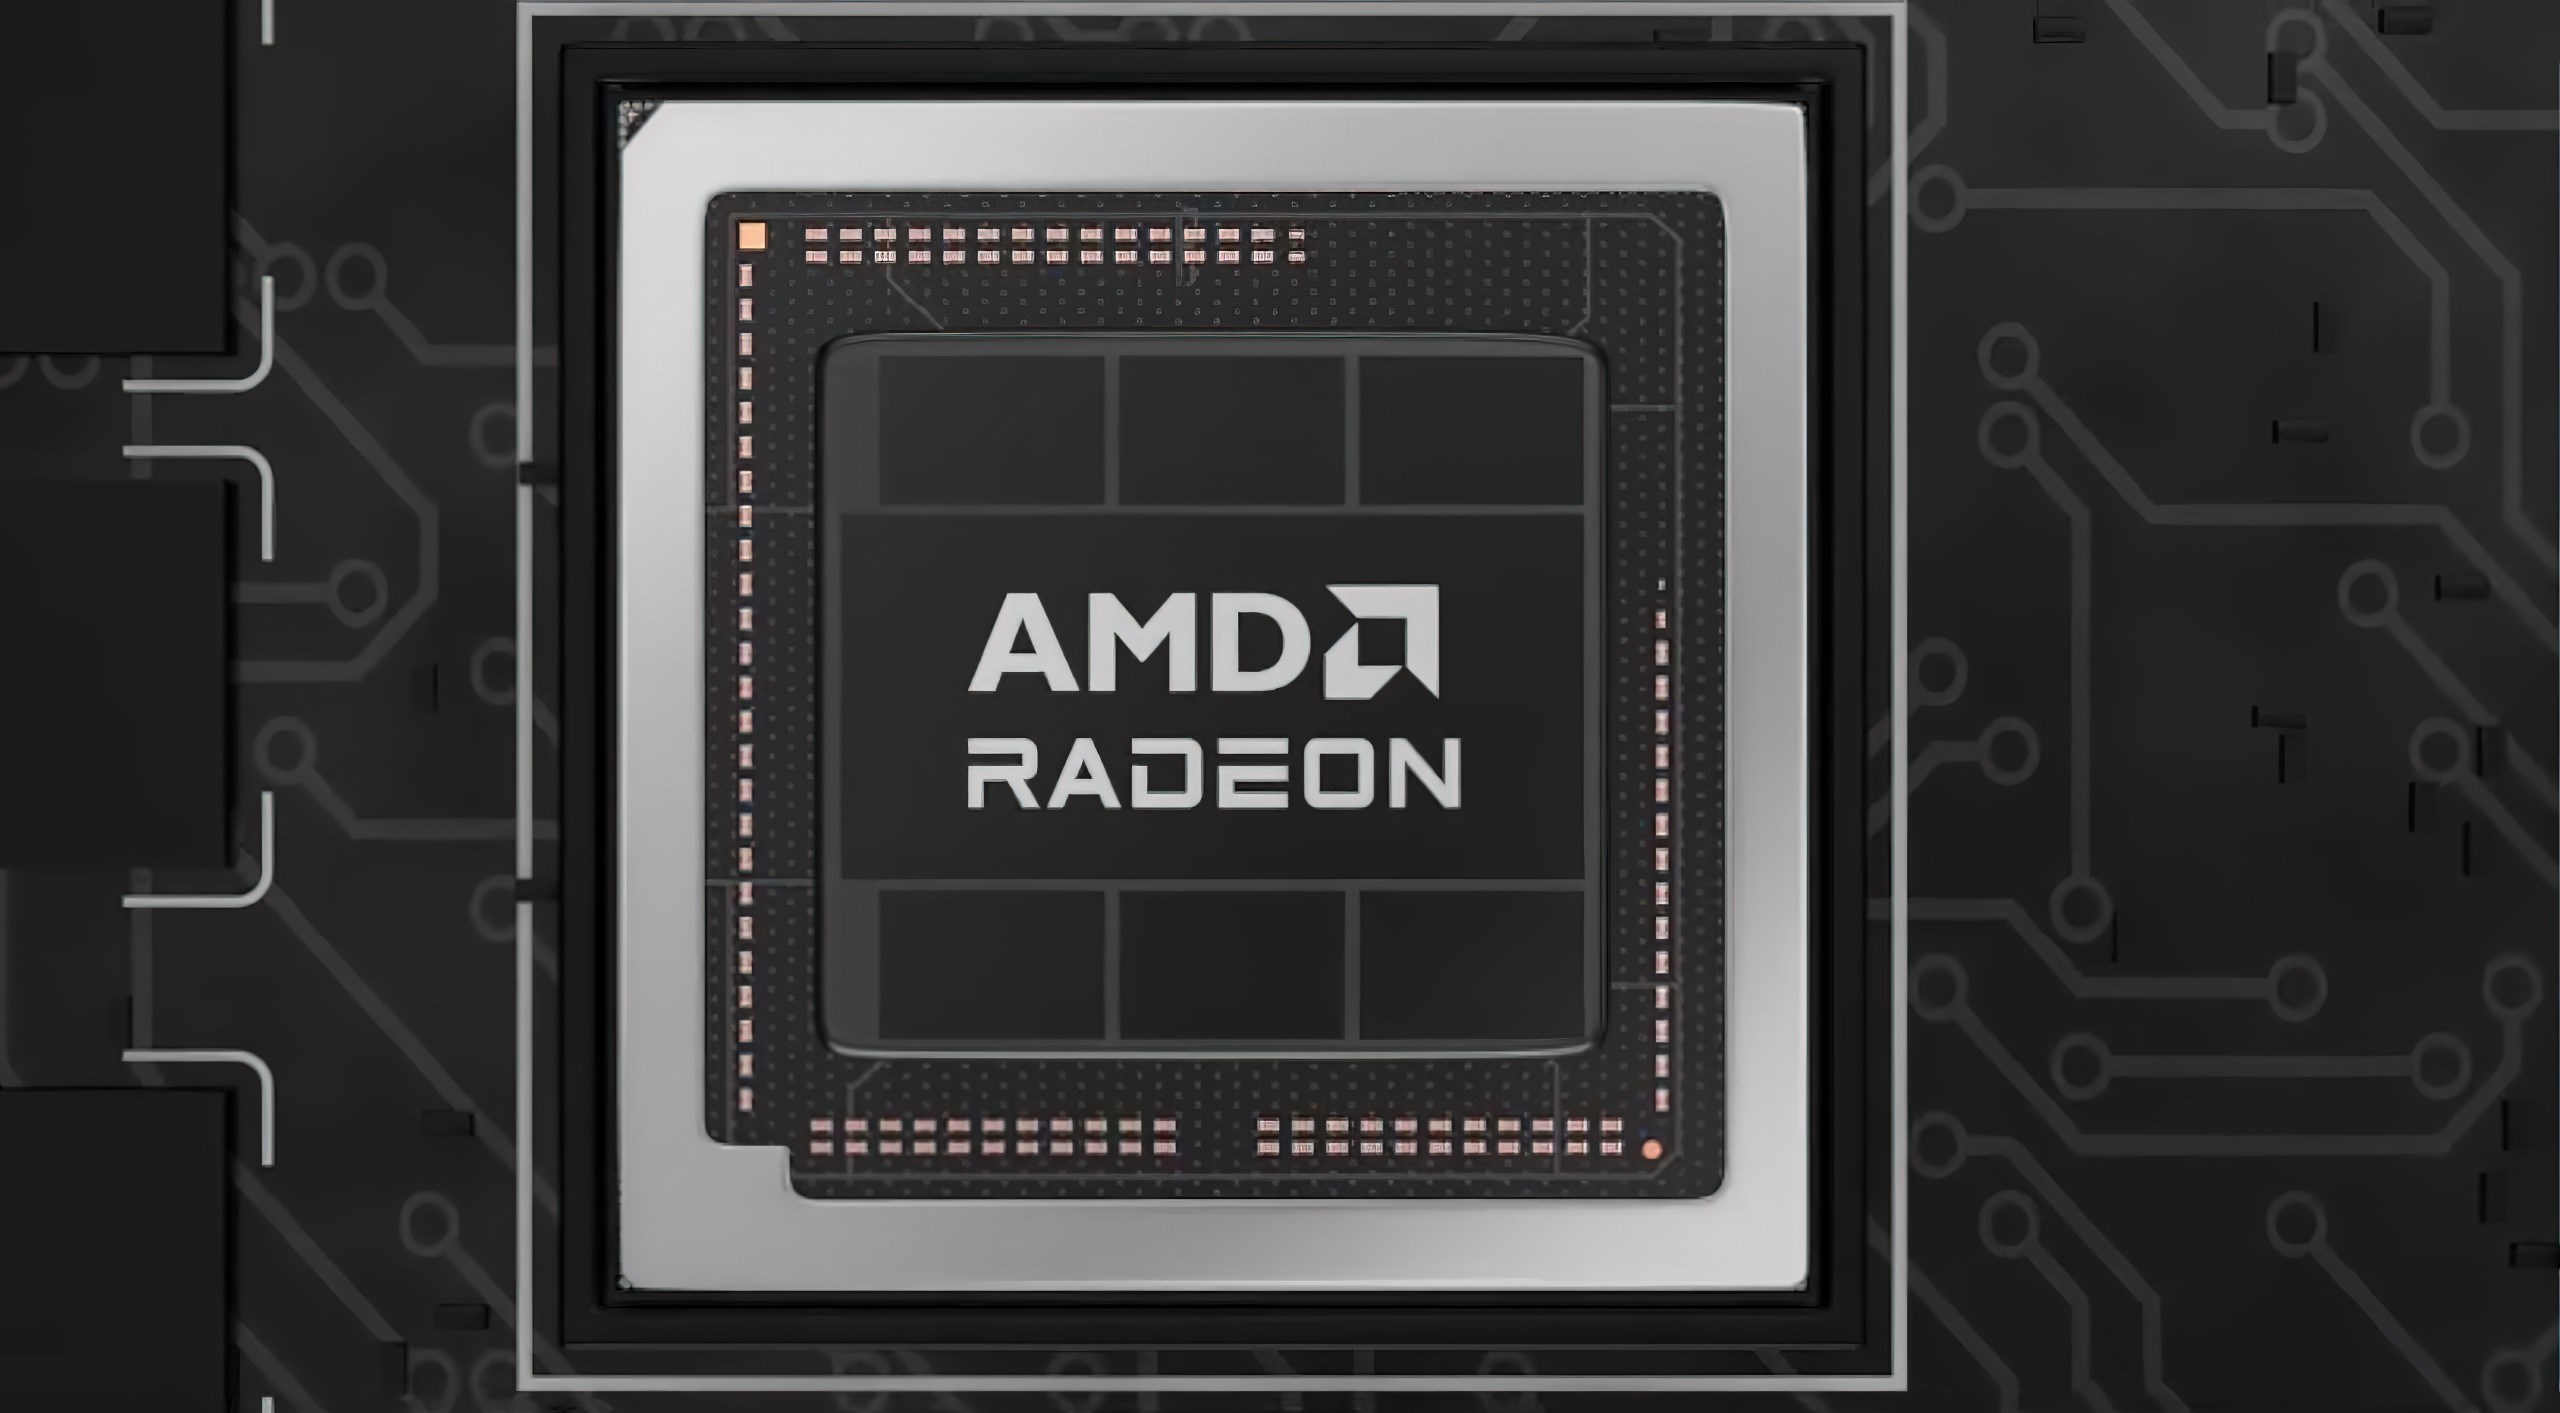 Karşınızda AMD’nin en hızlı mobil ekran kartı: Radeon RX 7900M